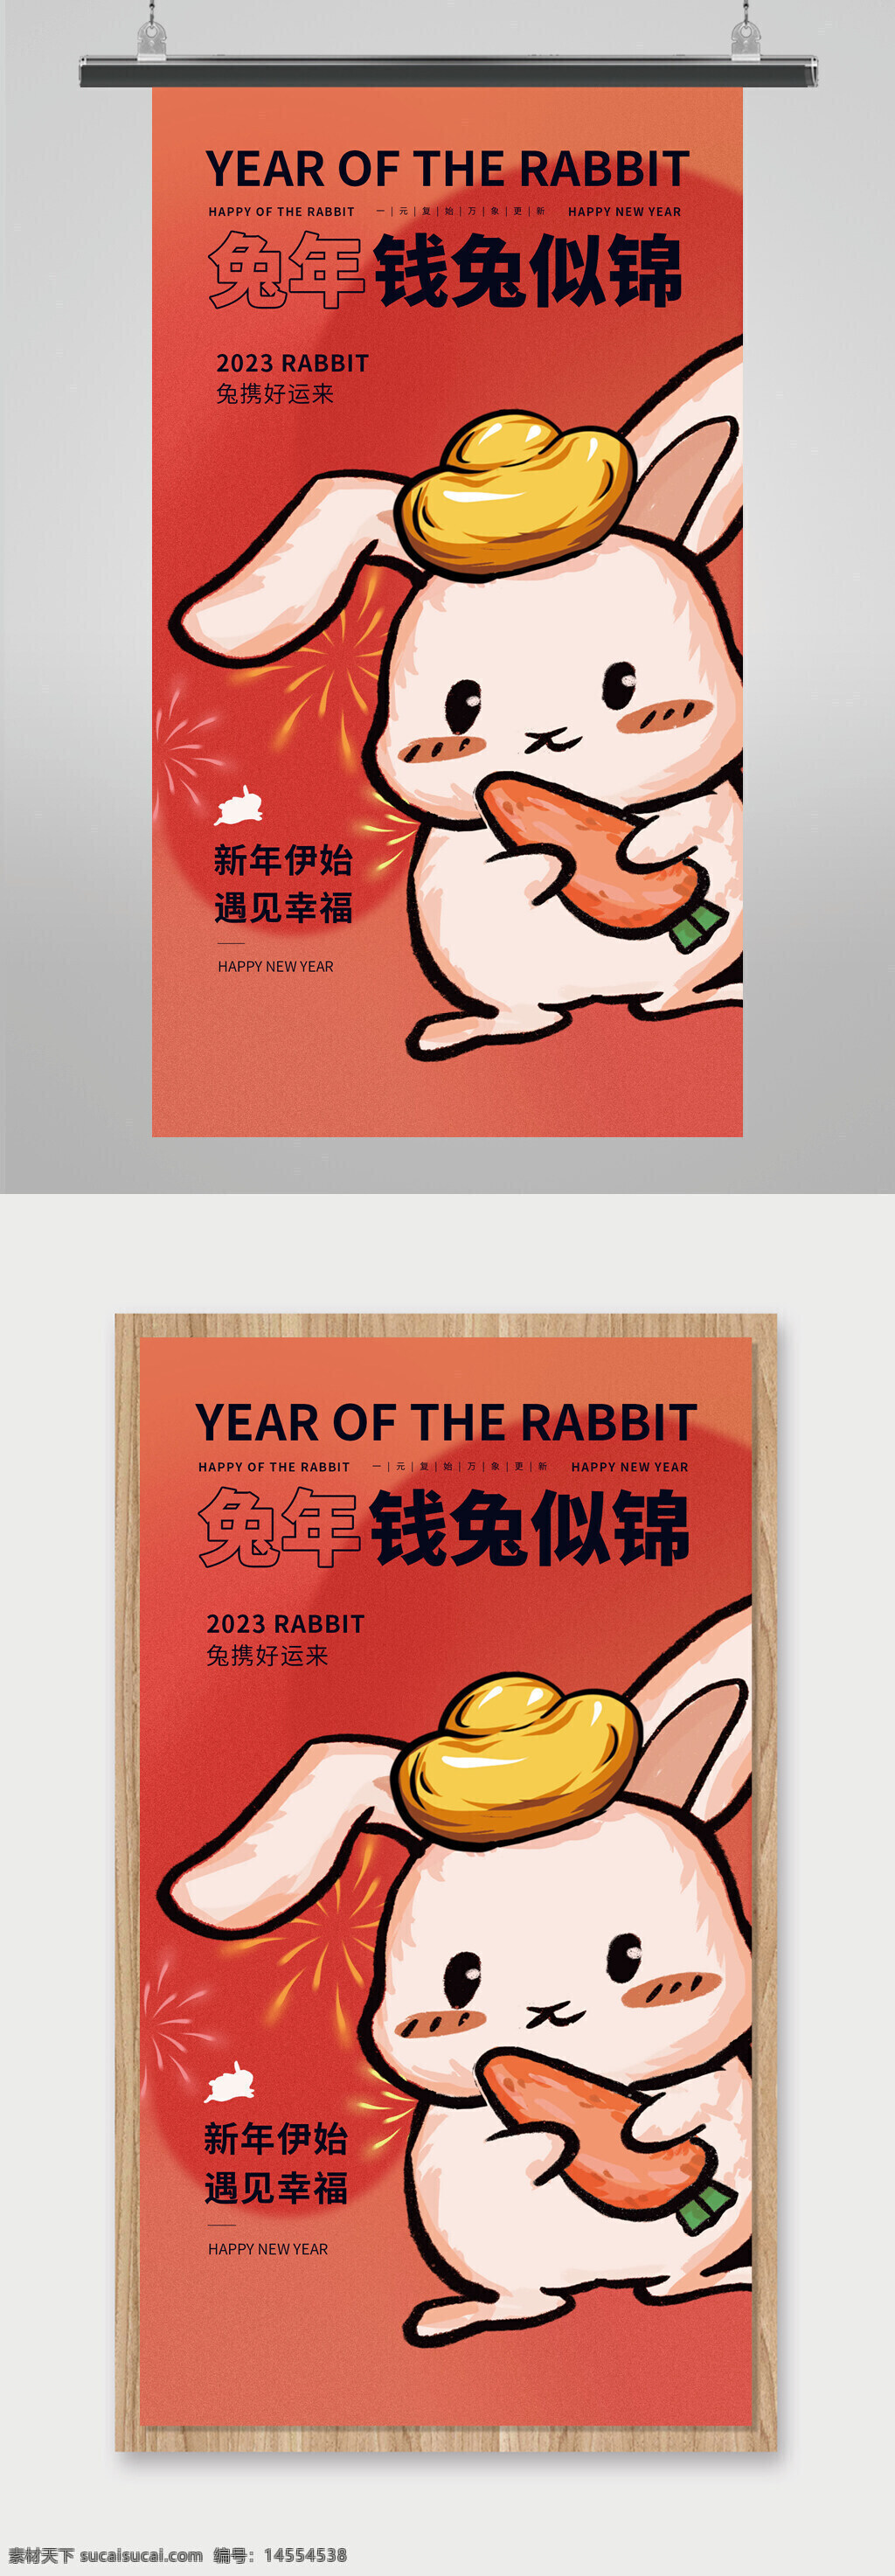 兔年 2023兔年 兔年春节 2023兔年大吉 2023年 2023海报 卡通兔 兔年大吉 兔年吉祥 兔年海报 兔年快乐 兔年素材 兔年贺卡 新年